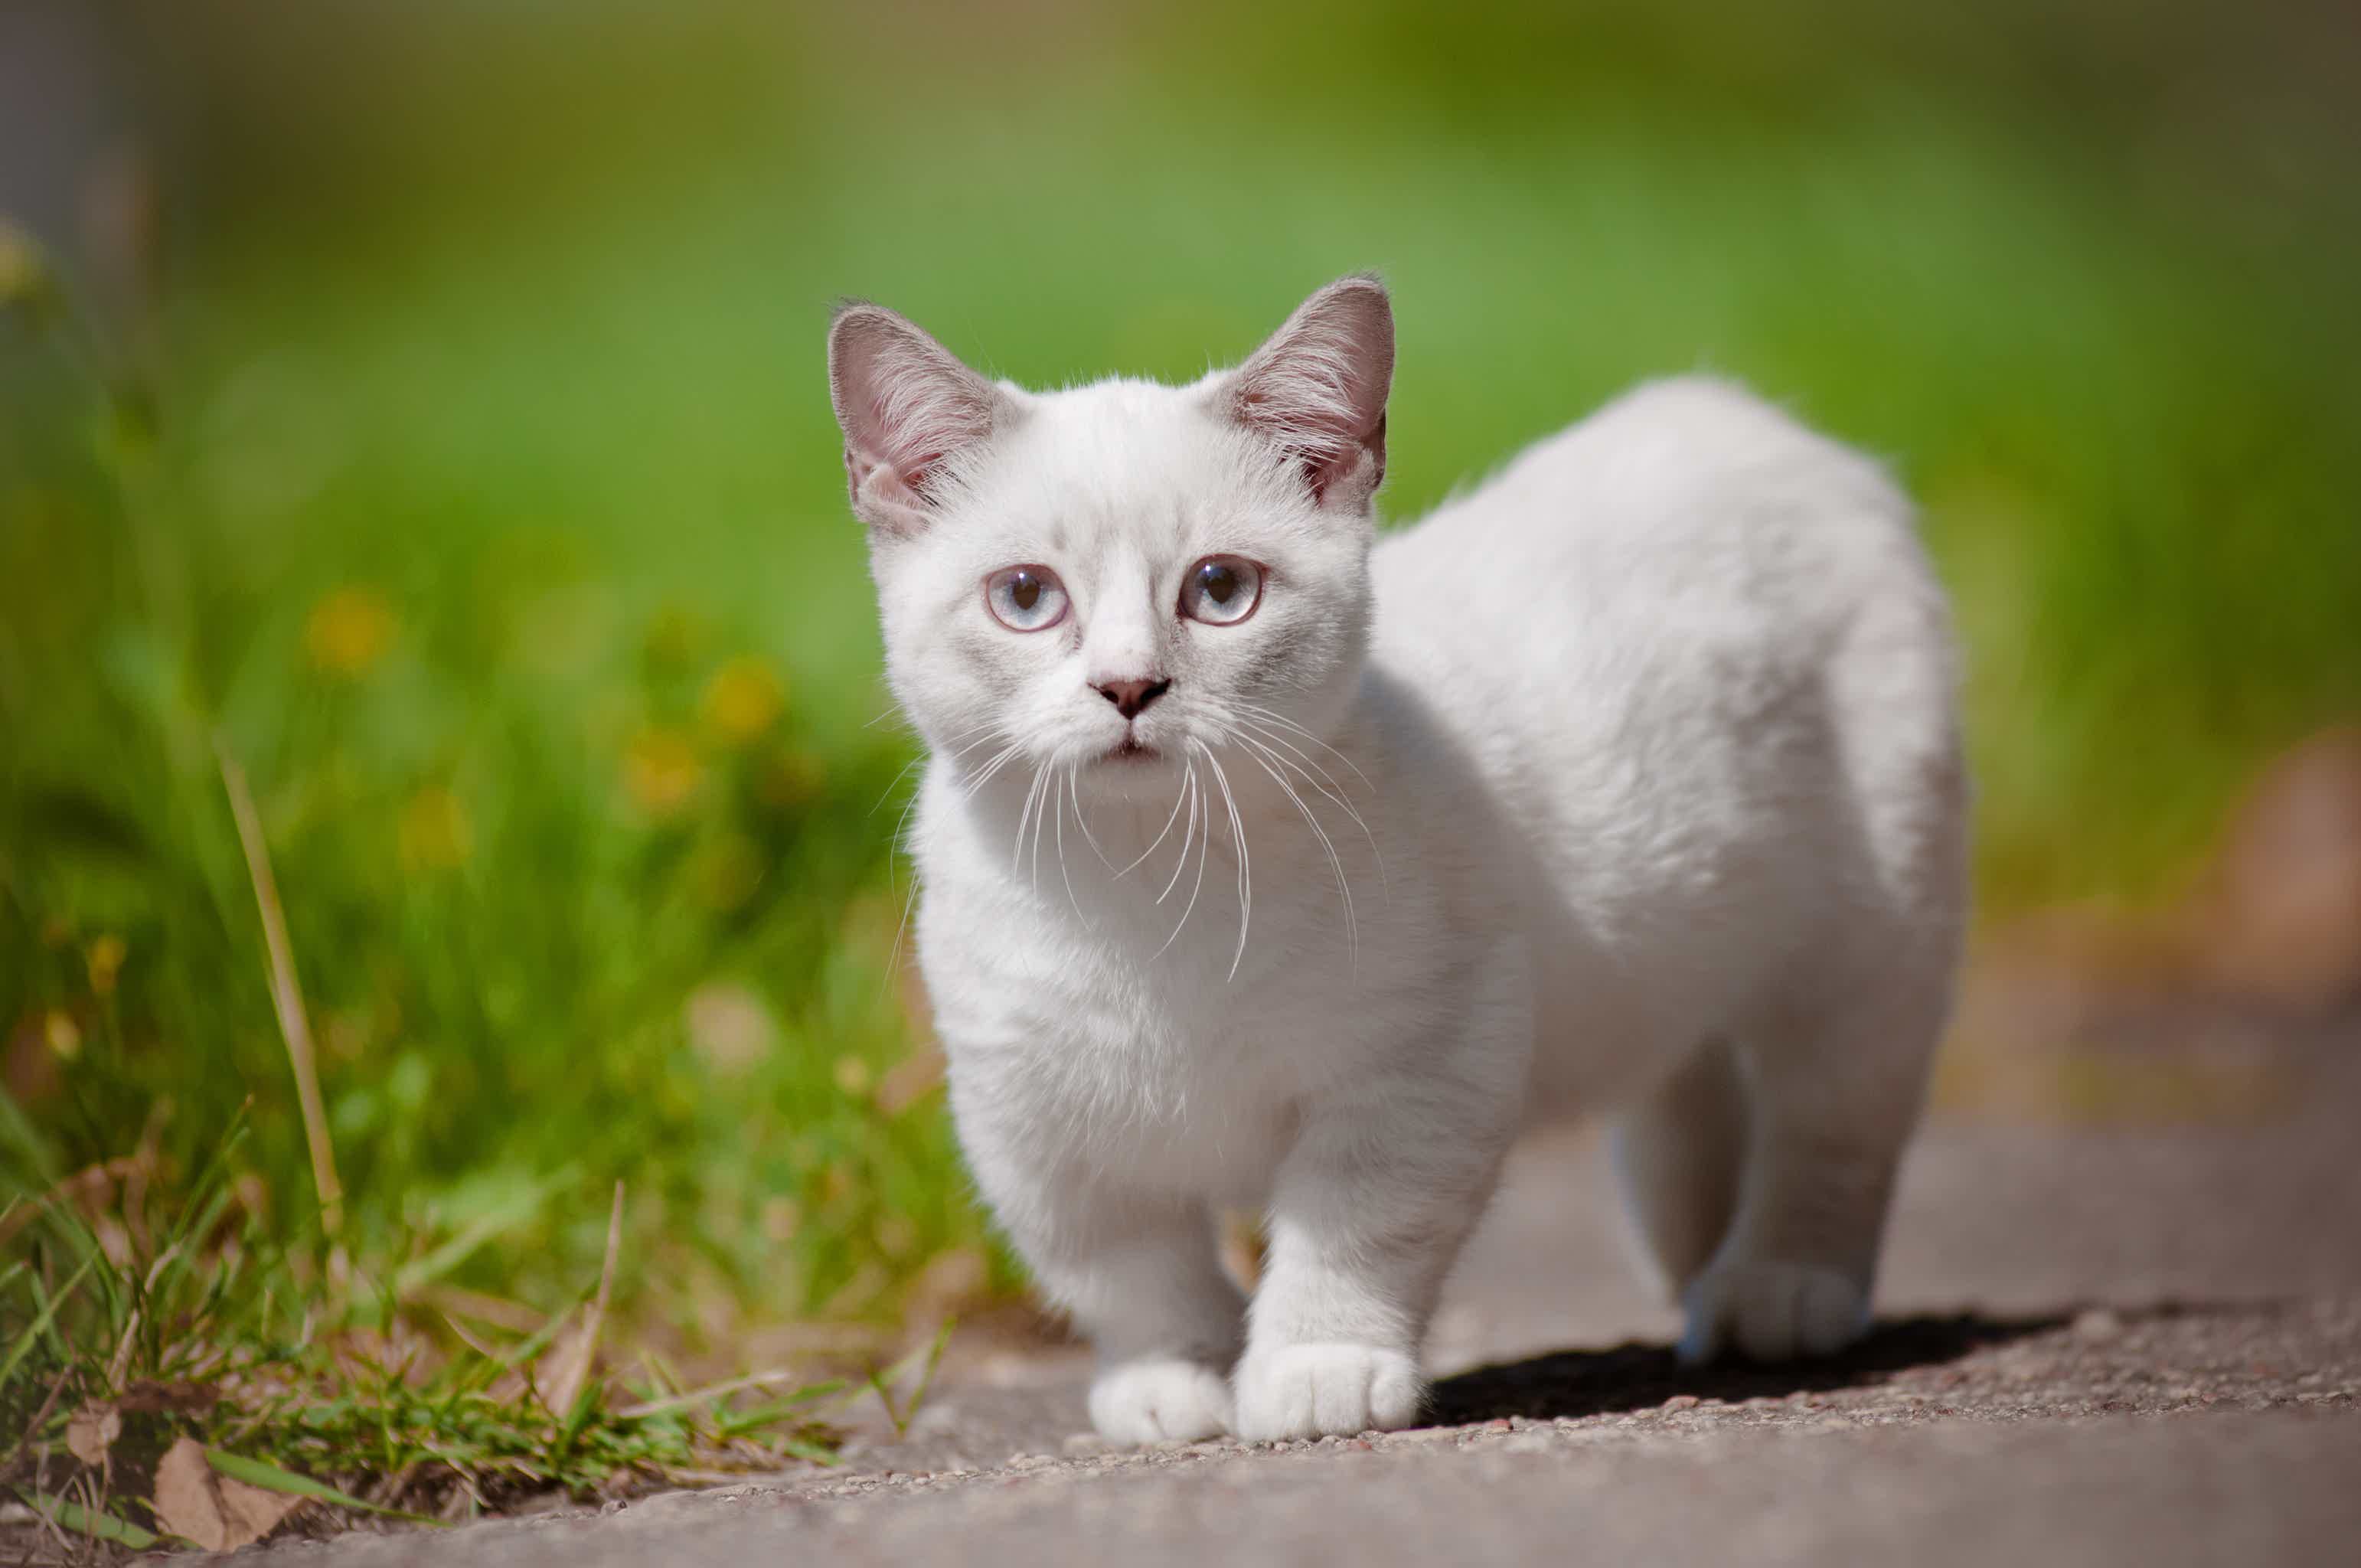 Afinal, quais as características de um gato com nanismo? Fonte: AdobeStock.